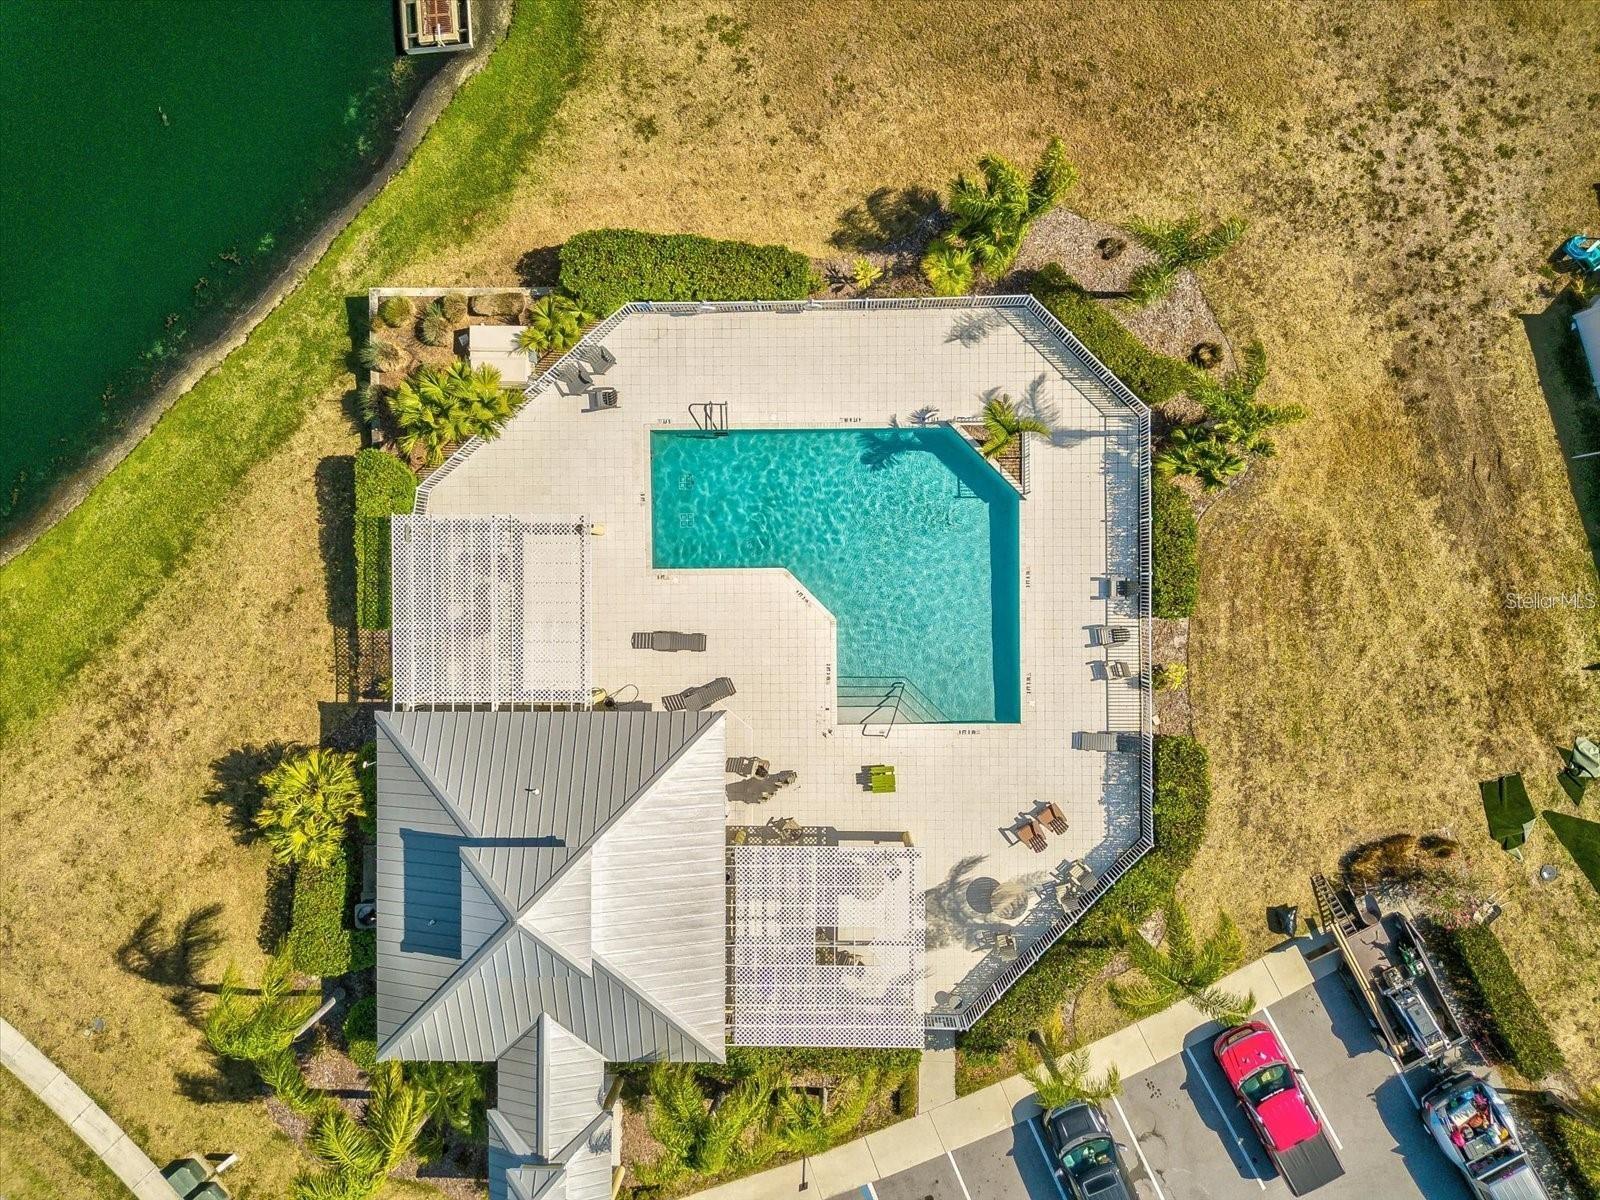 Bimini Bay clubhouse with pool